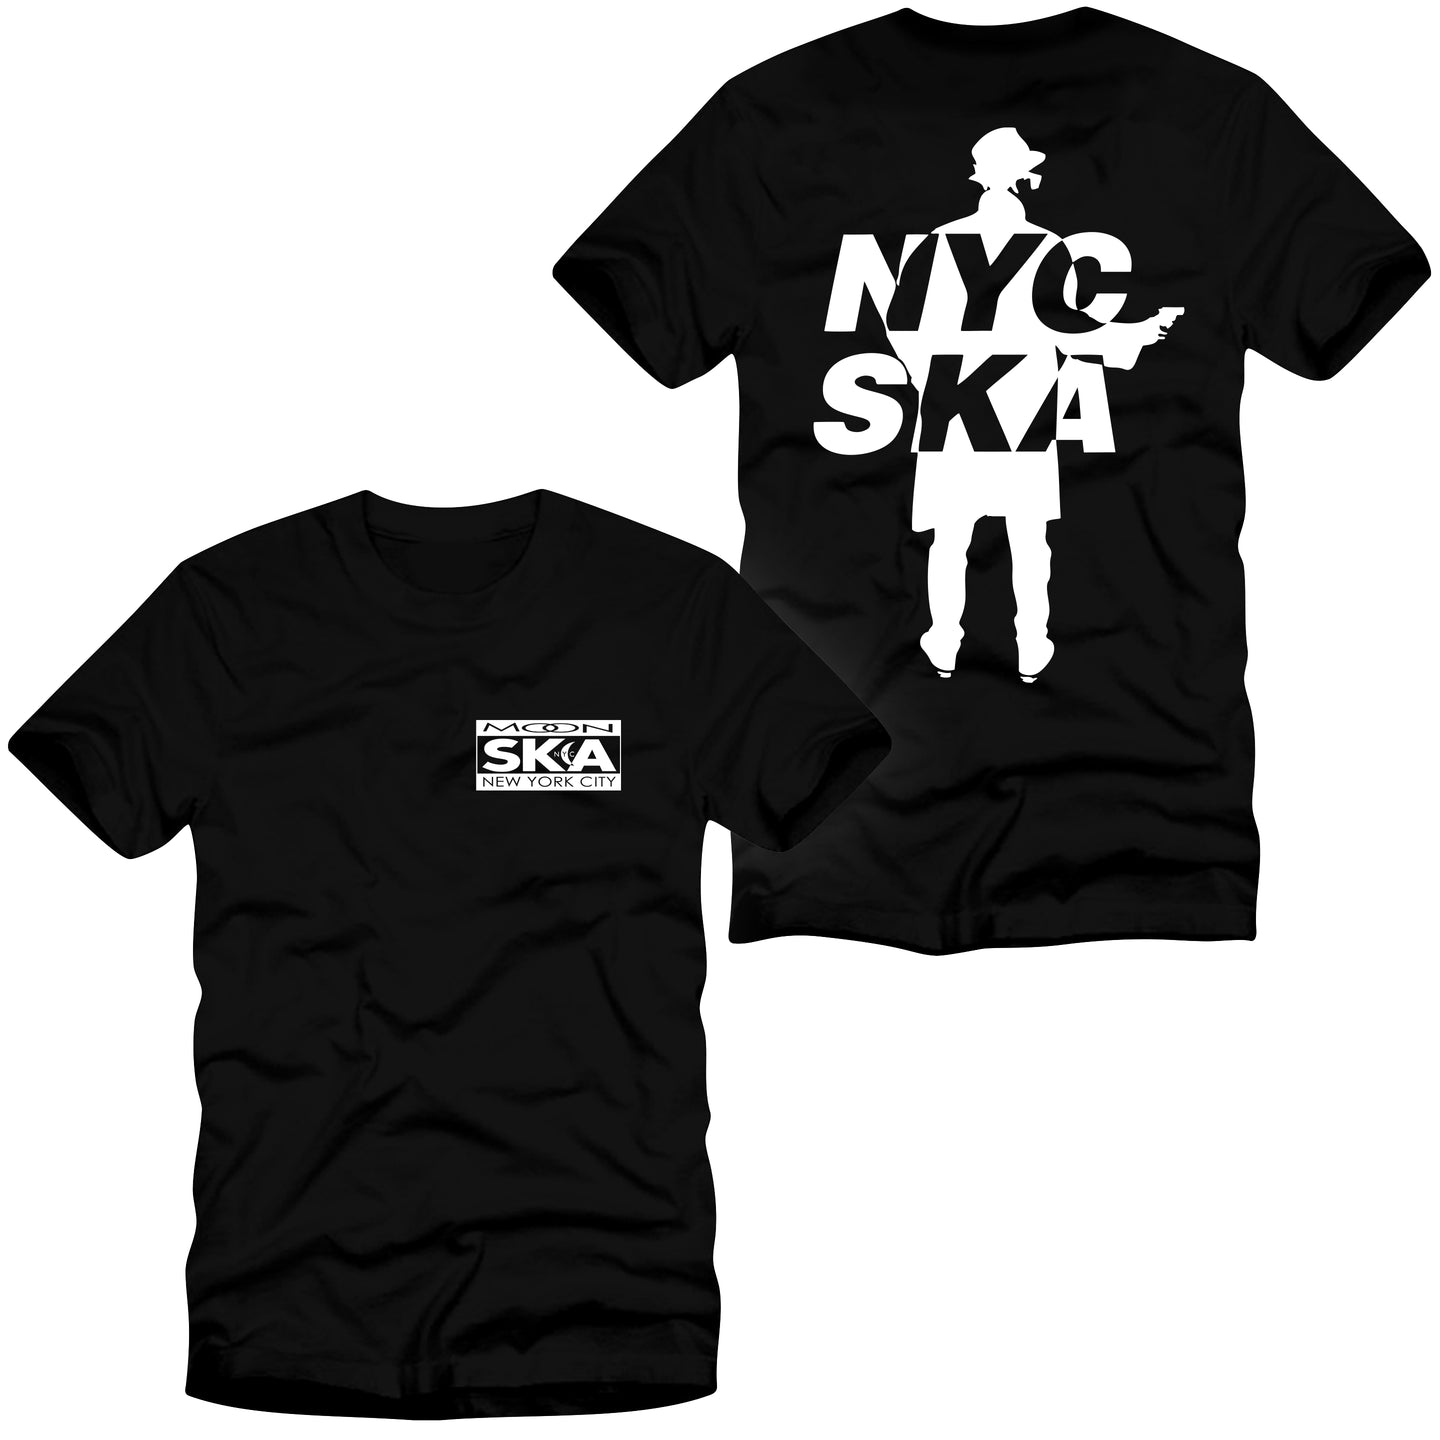 Moon Ska NYC Shirt - Black